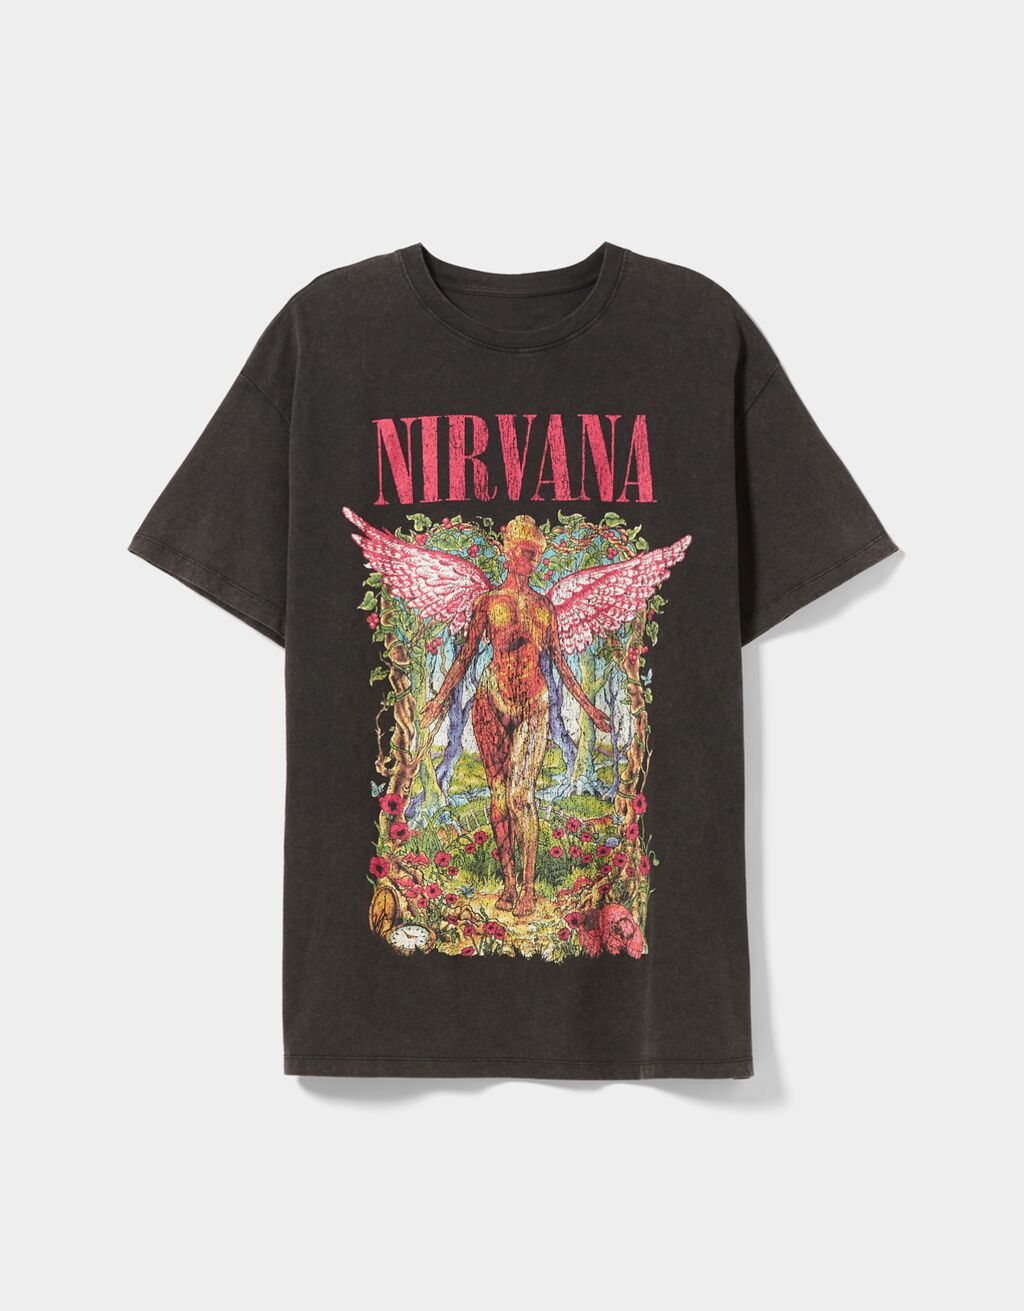 Tričko s krátkým rukávem a potiskem Nirvana